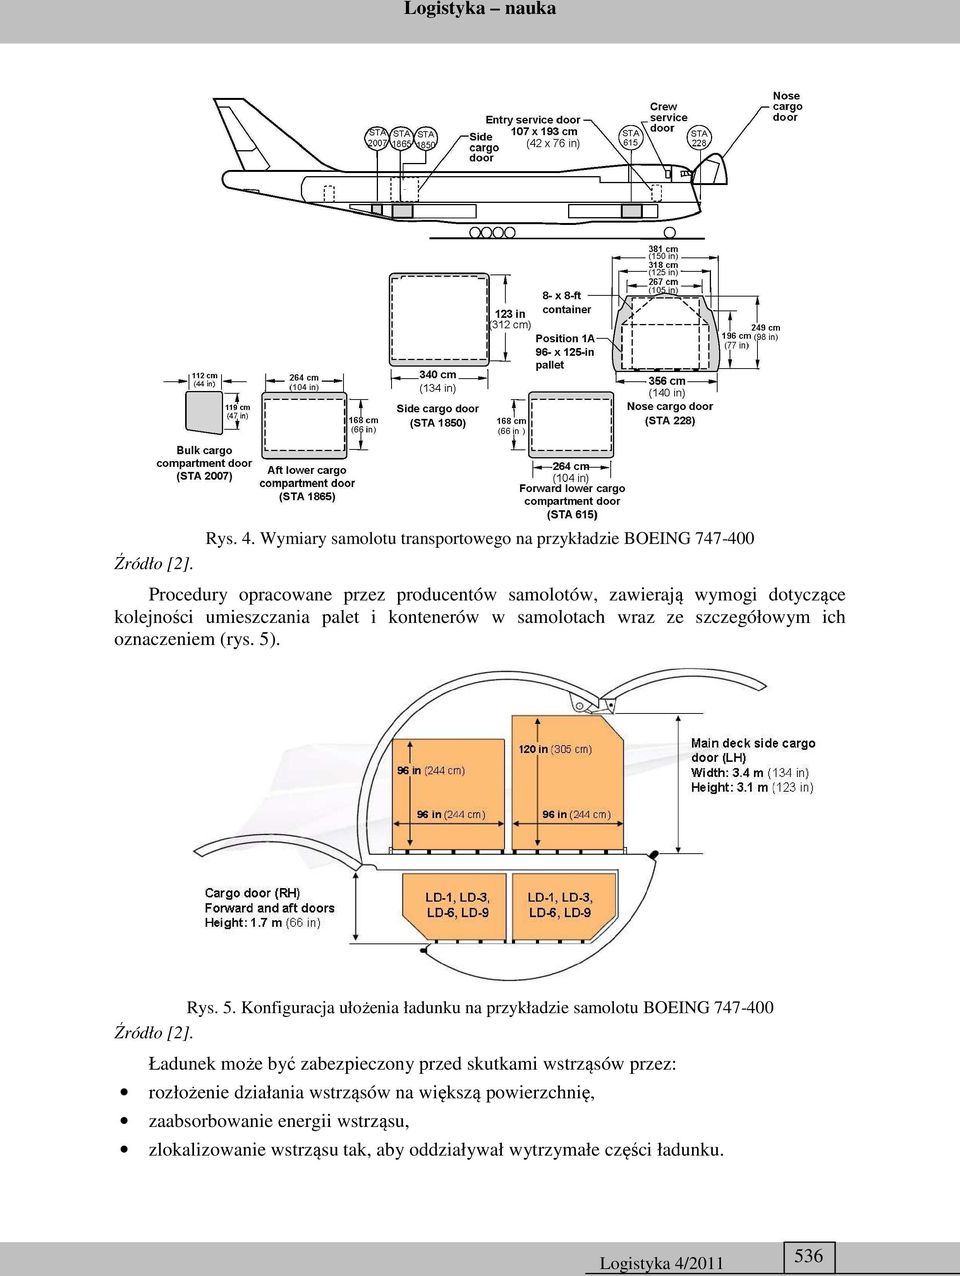 kolejności umieszczania palet i kontenerów w samolotach wraz ze szczegółowym ich oznaczeniem (rys. 5)